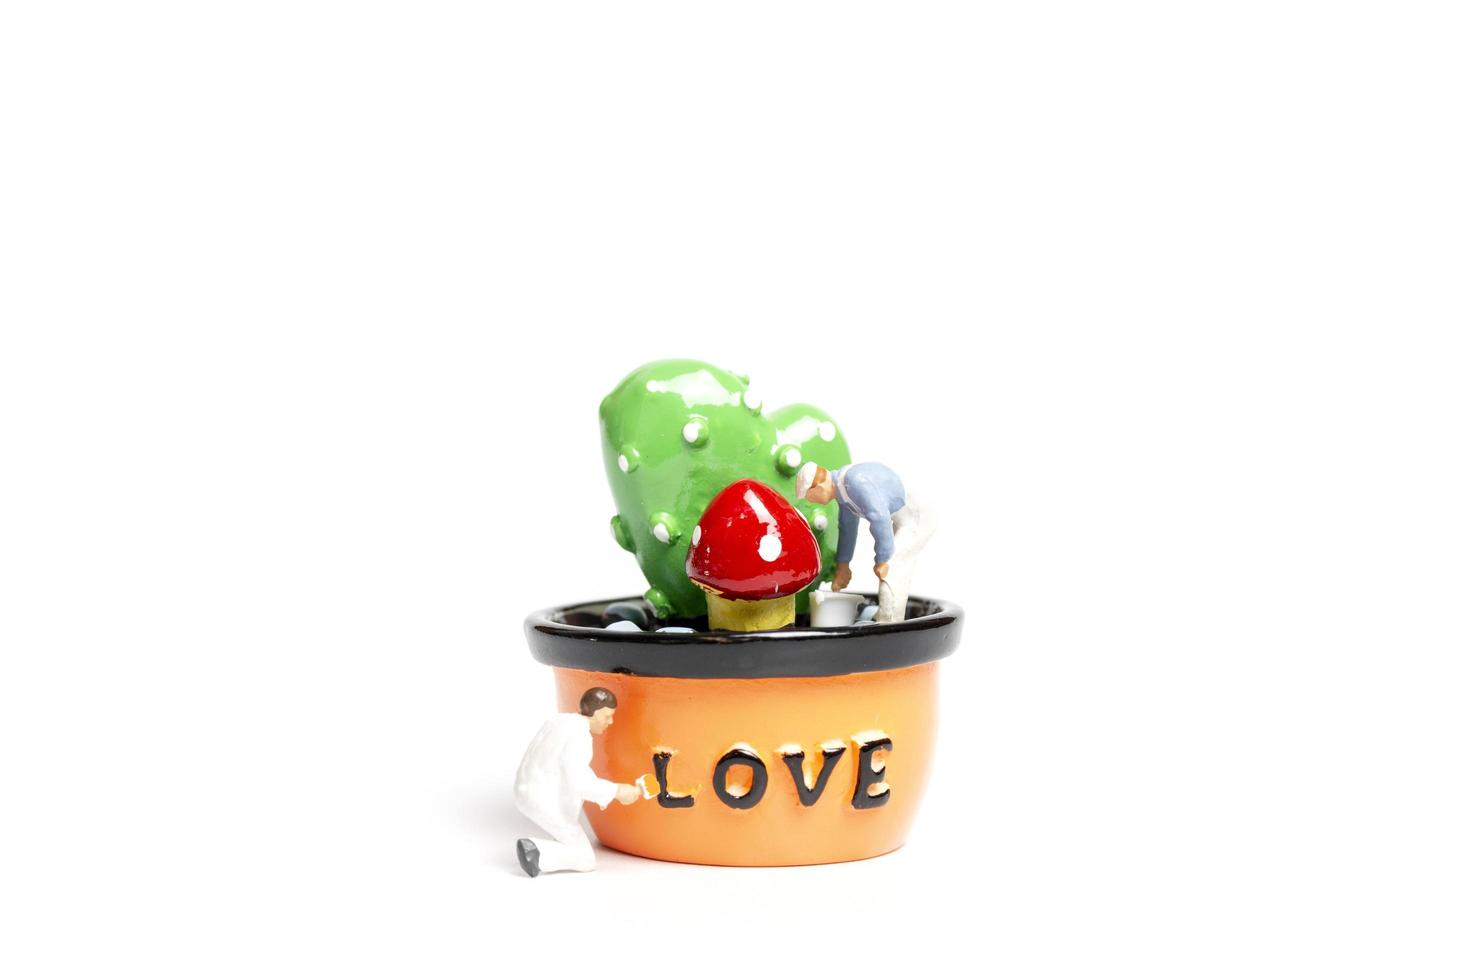 miniatuurschilders die planten in een peul kleuren met het woord liefde, Valentijnsdag concept foto